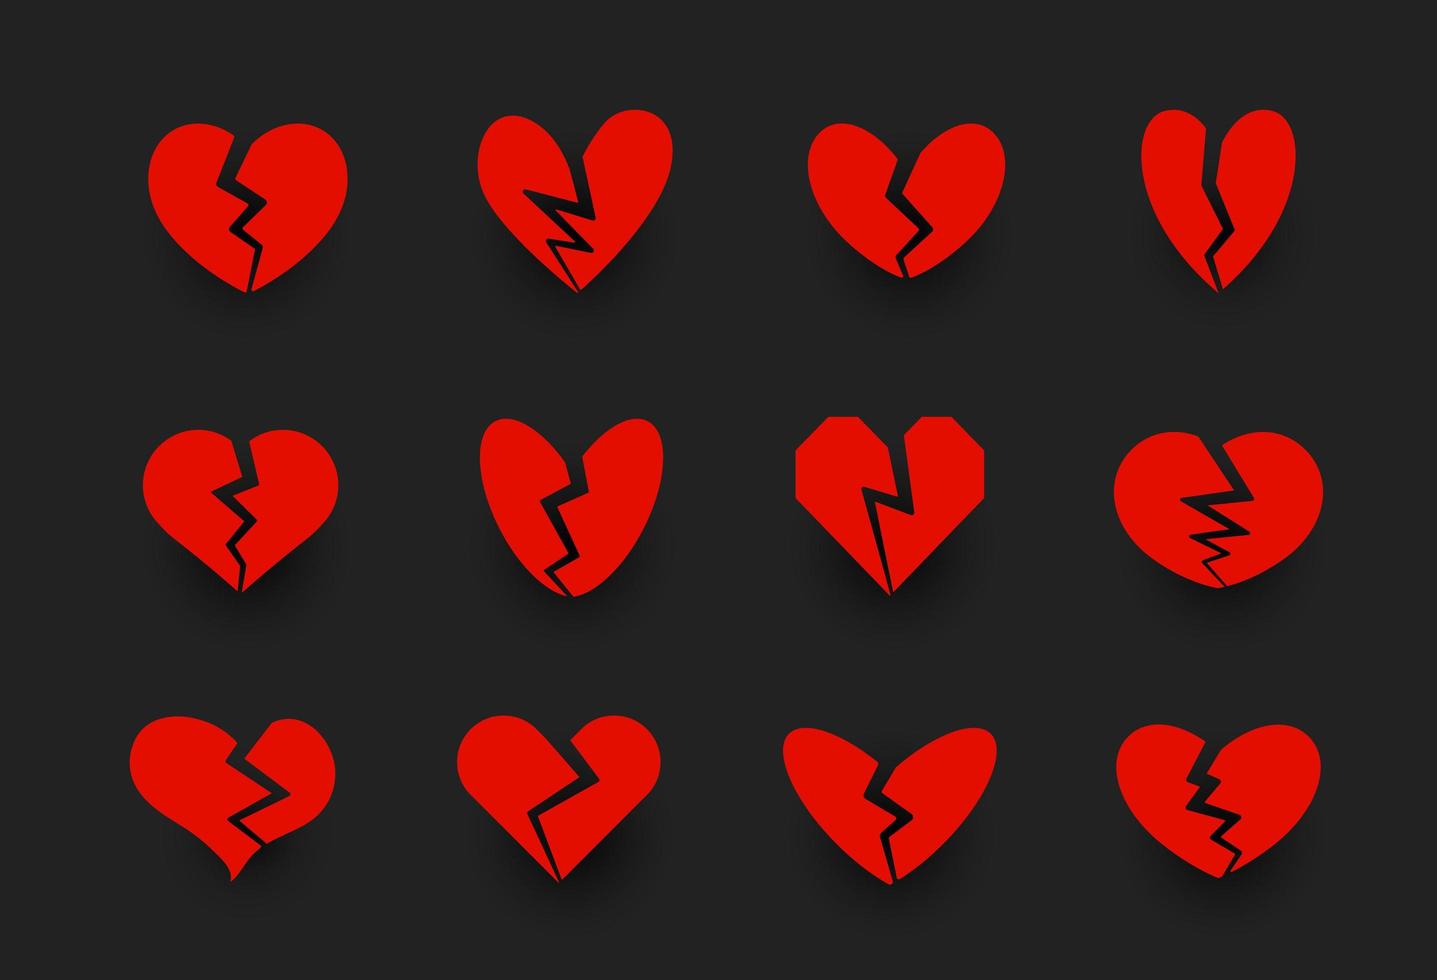 Symbolsammlung für gebrochene Herzen, Herzriss, Liebessymbol. Scheidung, Beziehungskrise, familiäre Probleme Zeichen. rote Vektorsymbole auf schwarzem Hintergrund. vektor